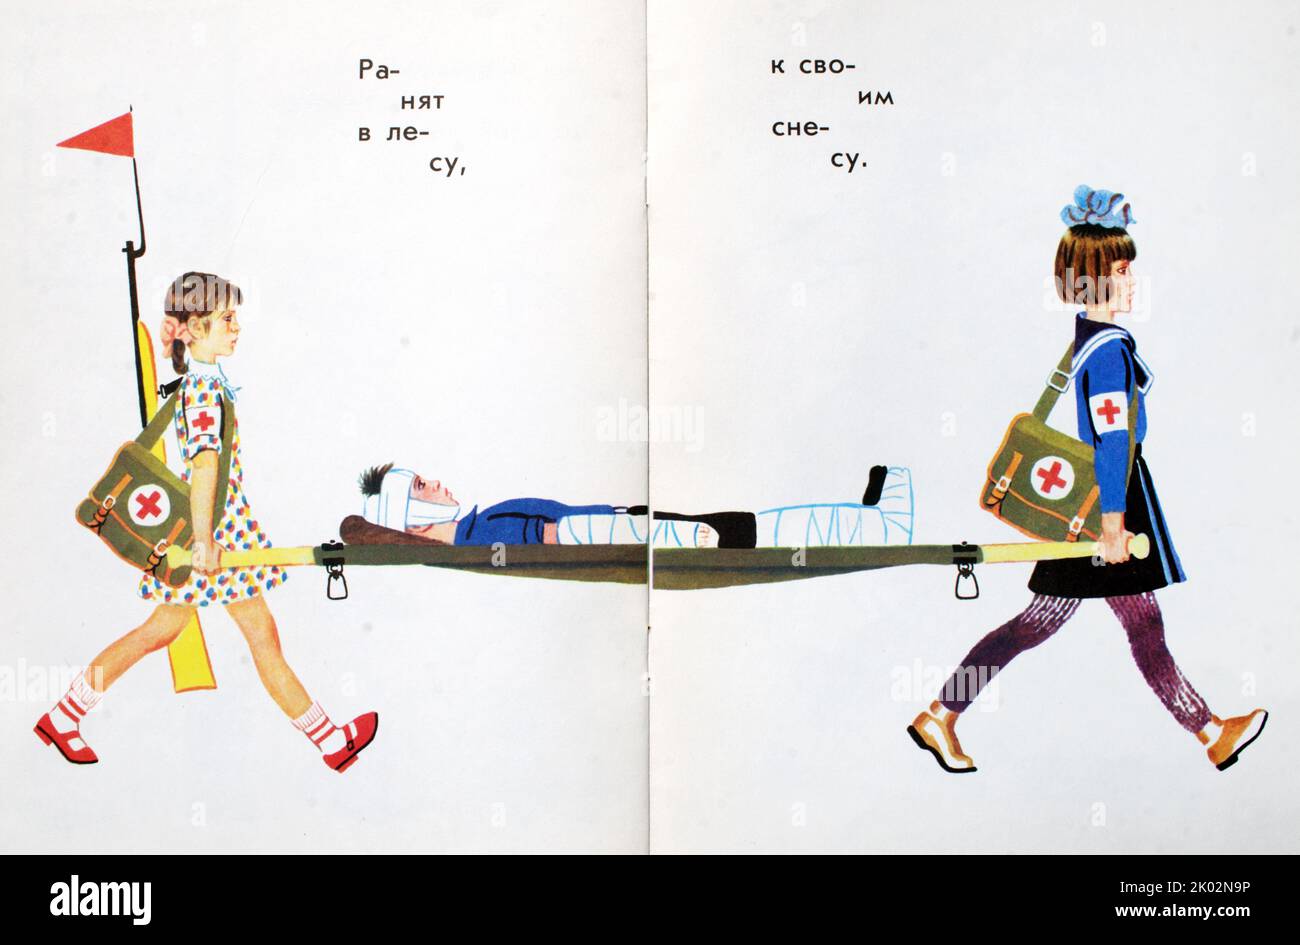 Sowjetisches Kinderpropagandabuch Illustration im Kalten Krieg. Zeigt zwei Mädchen, die eine Bahre unter dem Motto „Wenn sie dich im Wald treffen, nimm dich mit nach Hause“ tragen. Stockfoto